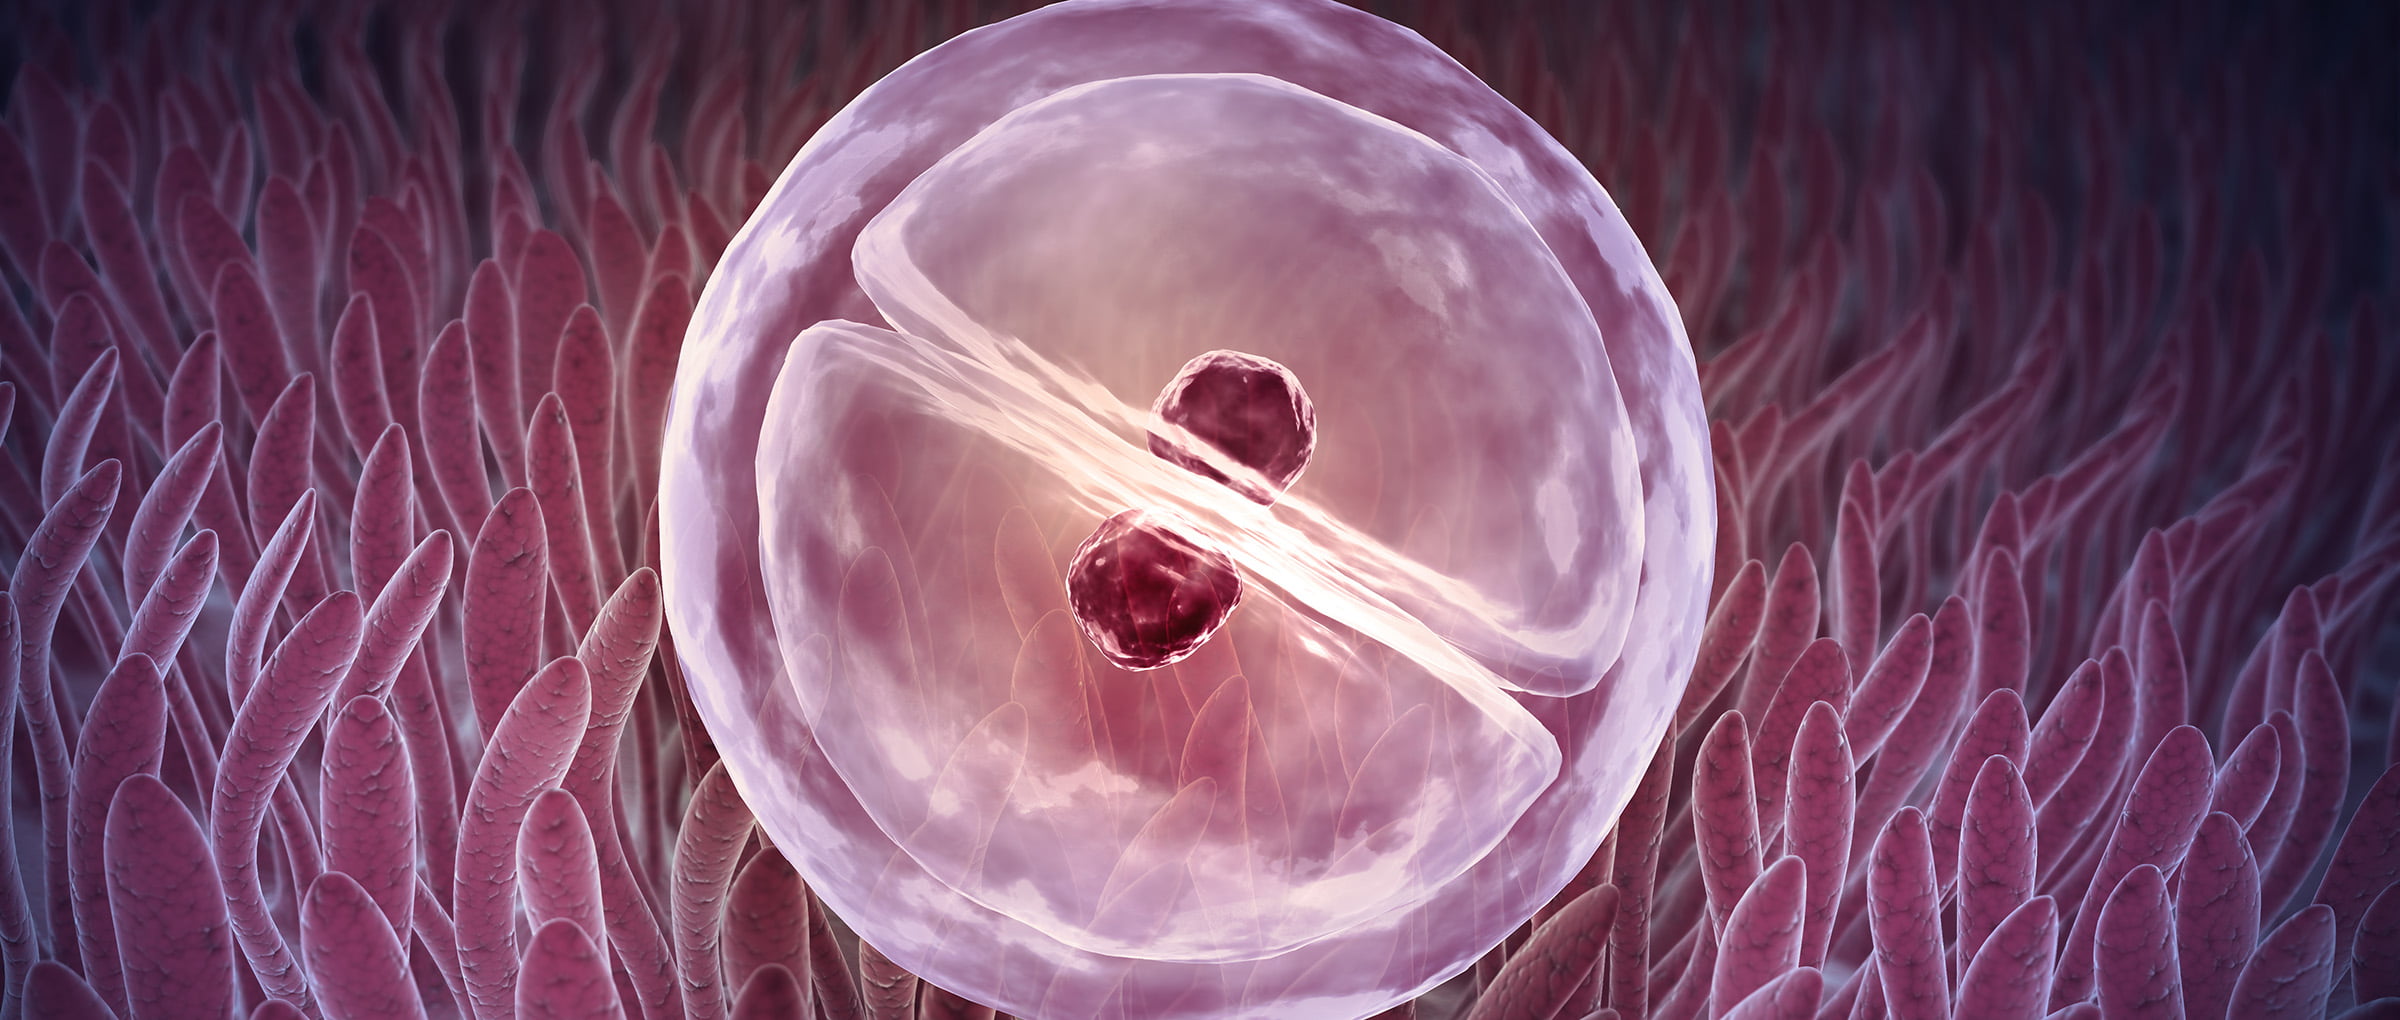 Impianto dell'embrione nell'endometrio